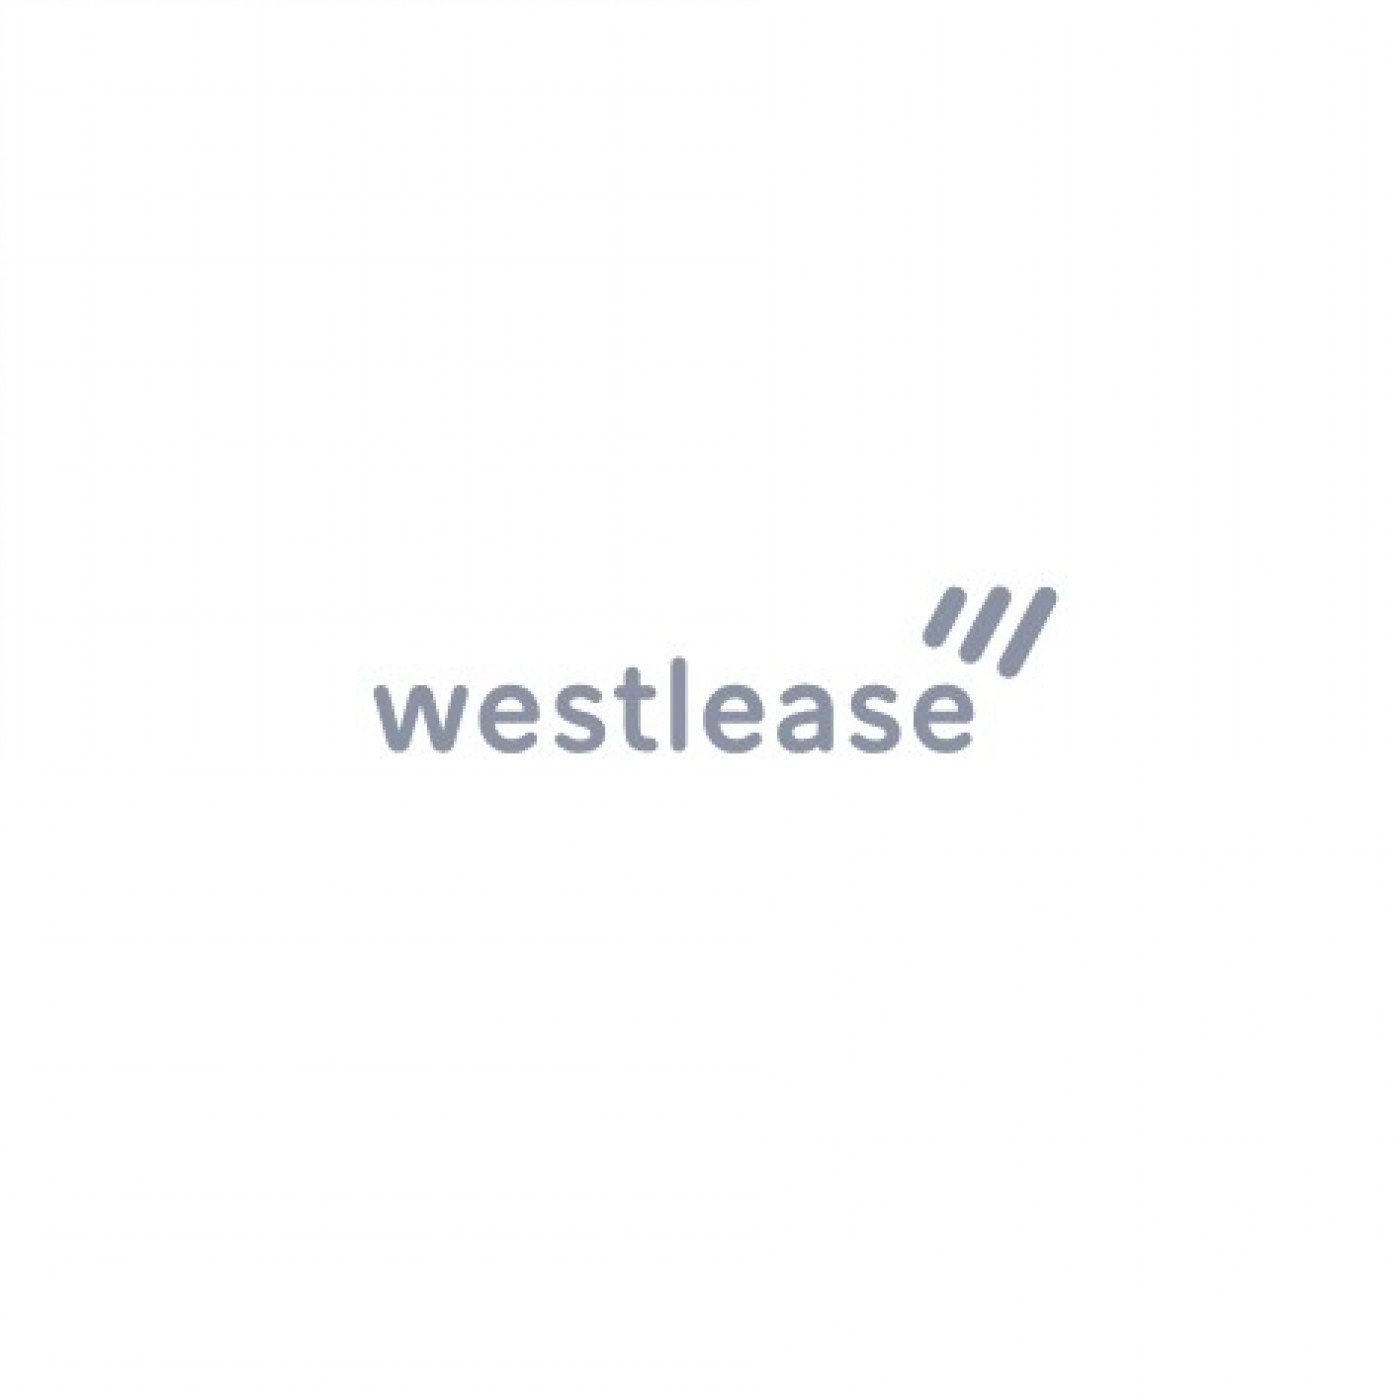 03.Westlease